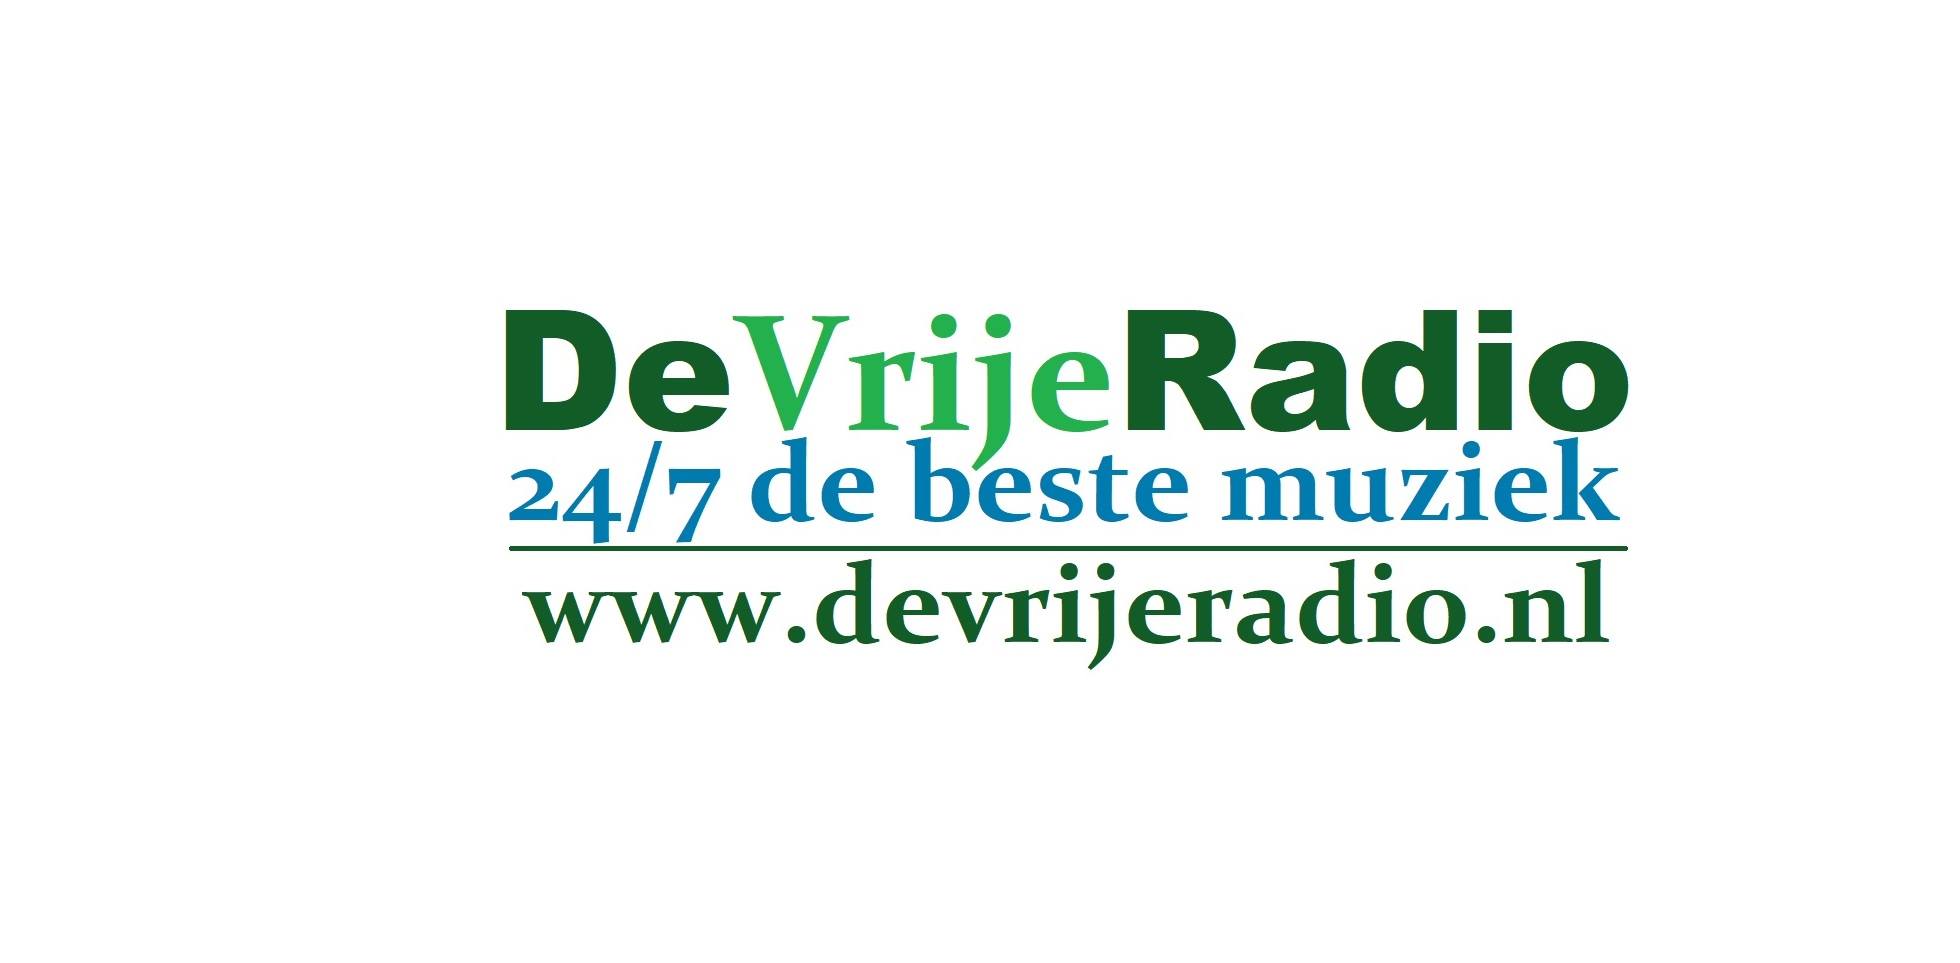 Nieuwe Website voor De Vrije Radio!